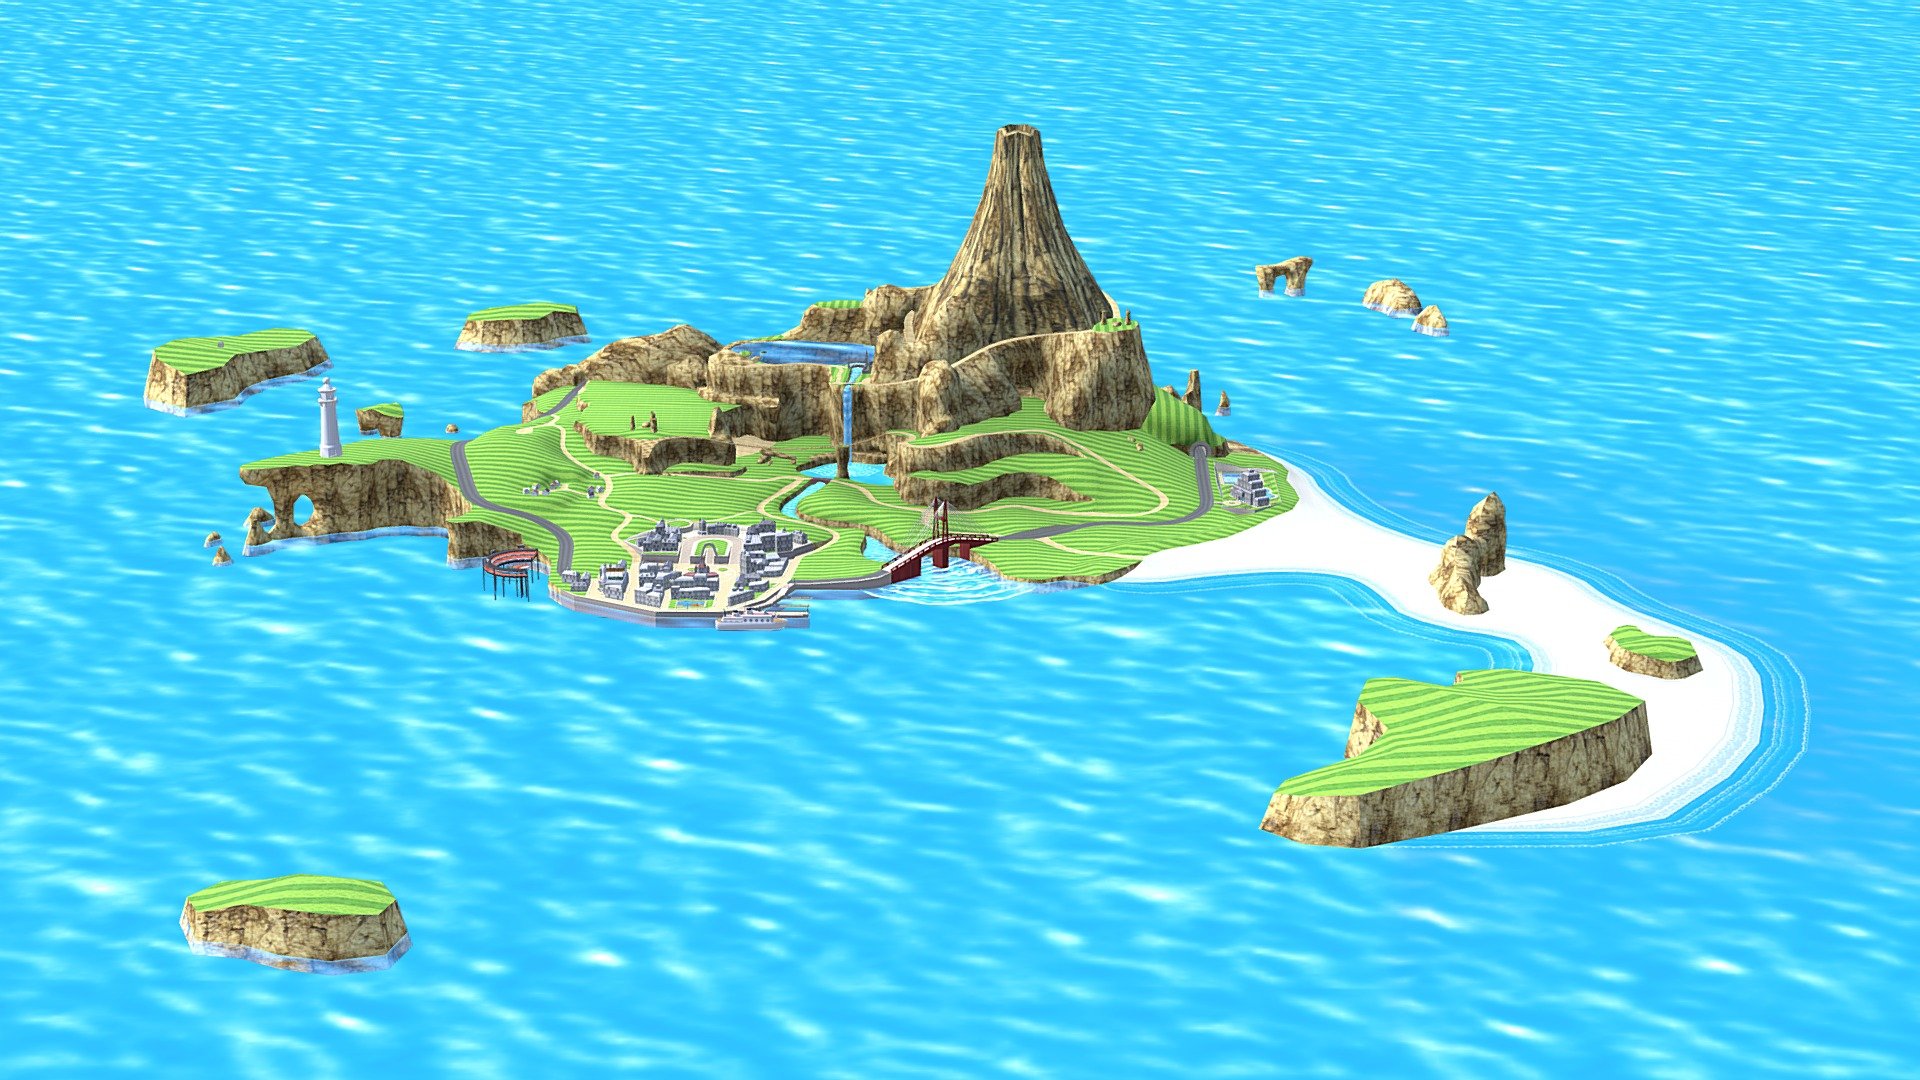 Wuhu Island - Wii Sports Resort - Download Free 3D model by Nelib! (@Nelib) 3d model